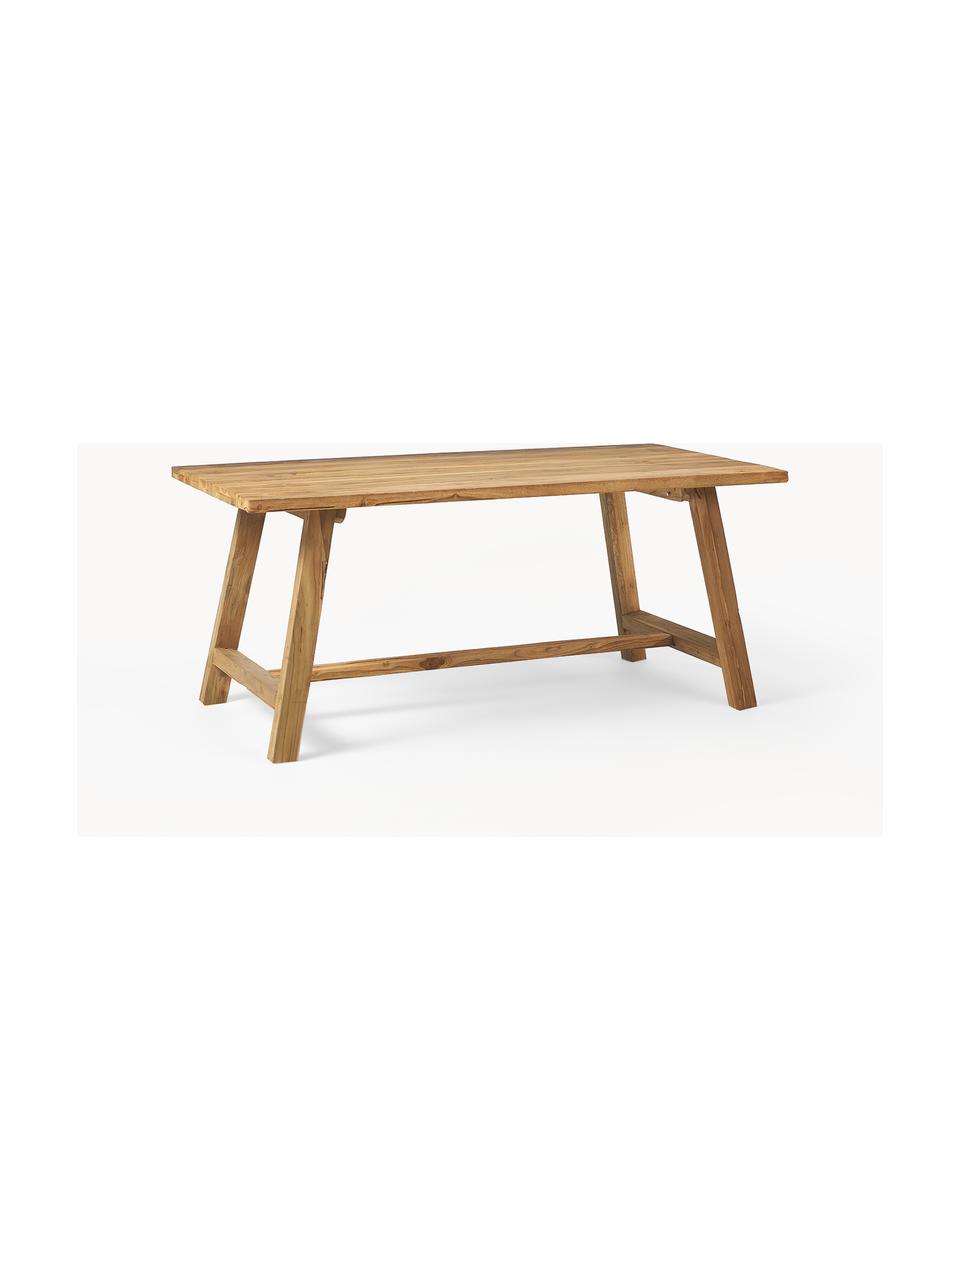 Jídelní stůl z teakového dřeva Lawas, různé velikosti, Recyklované přírodní teakové dřevo

Tento produkt je vyroben z udržitelných zdrojů dřeva s certifikací FSC®., Teakové dřevo, Š 180 cm, H 90 cm